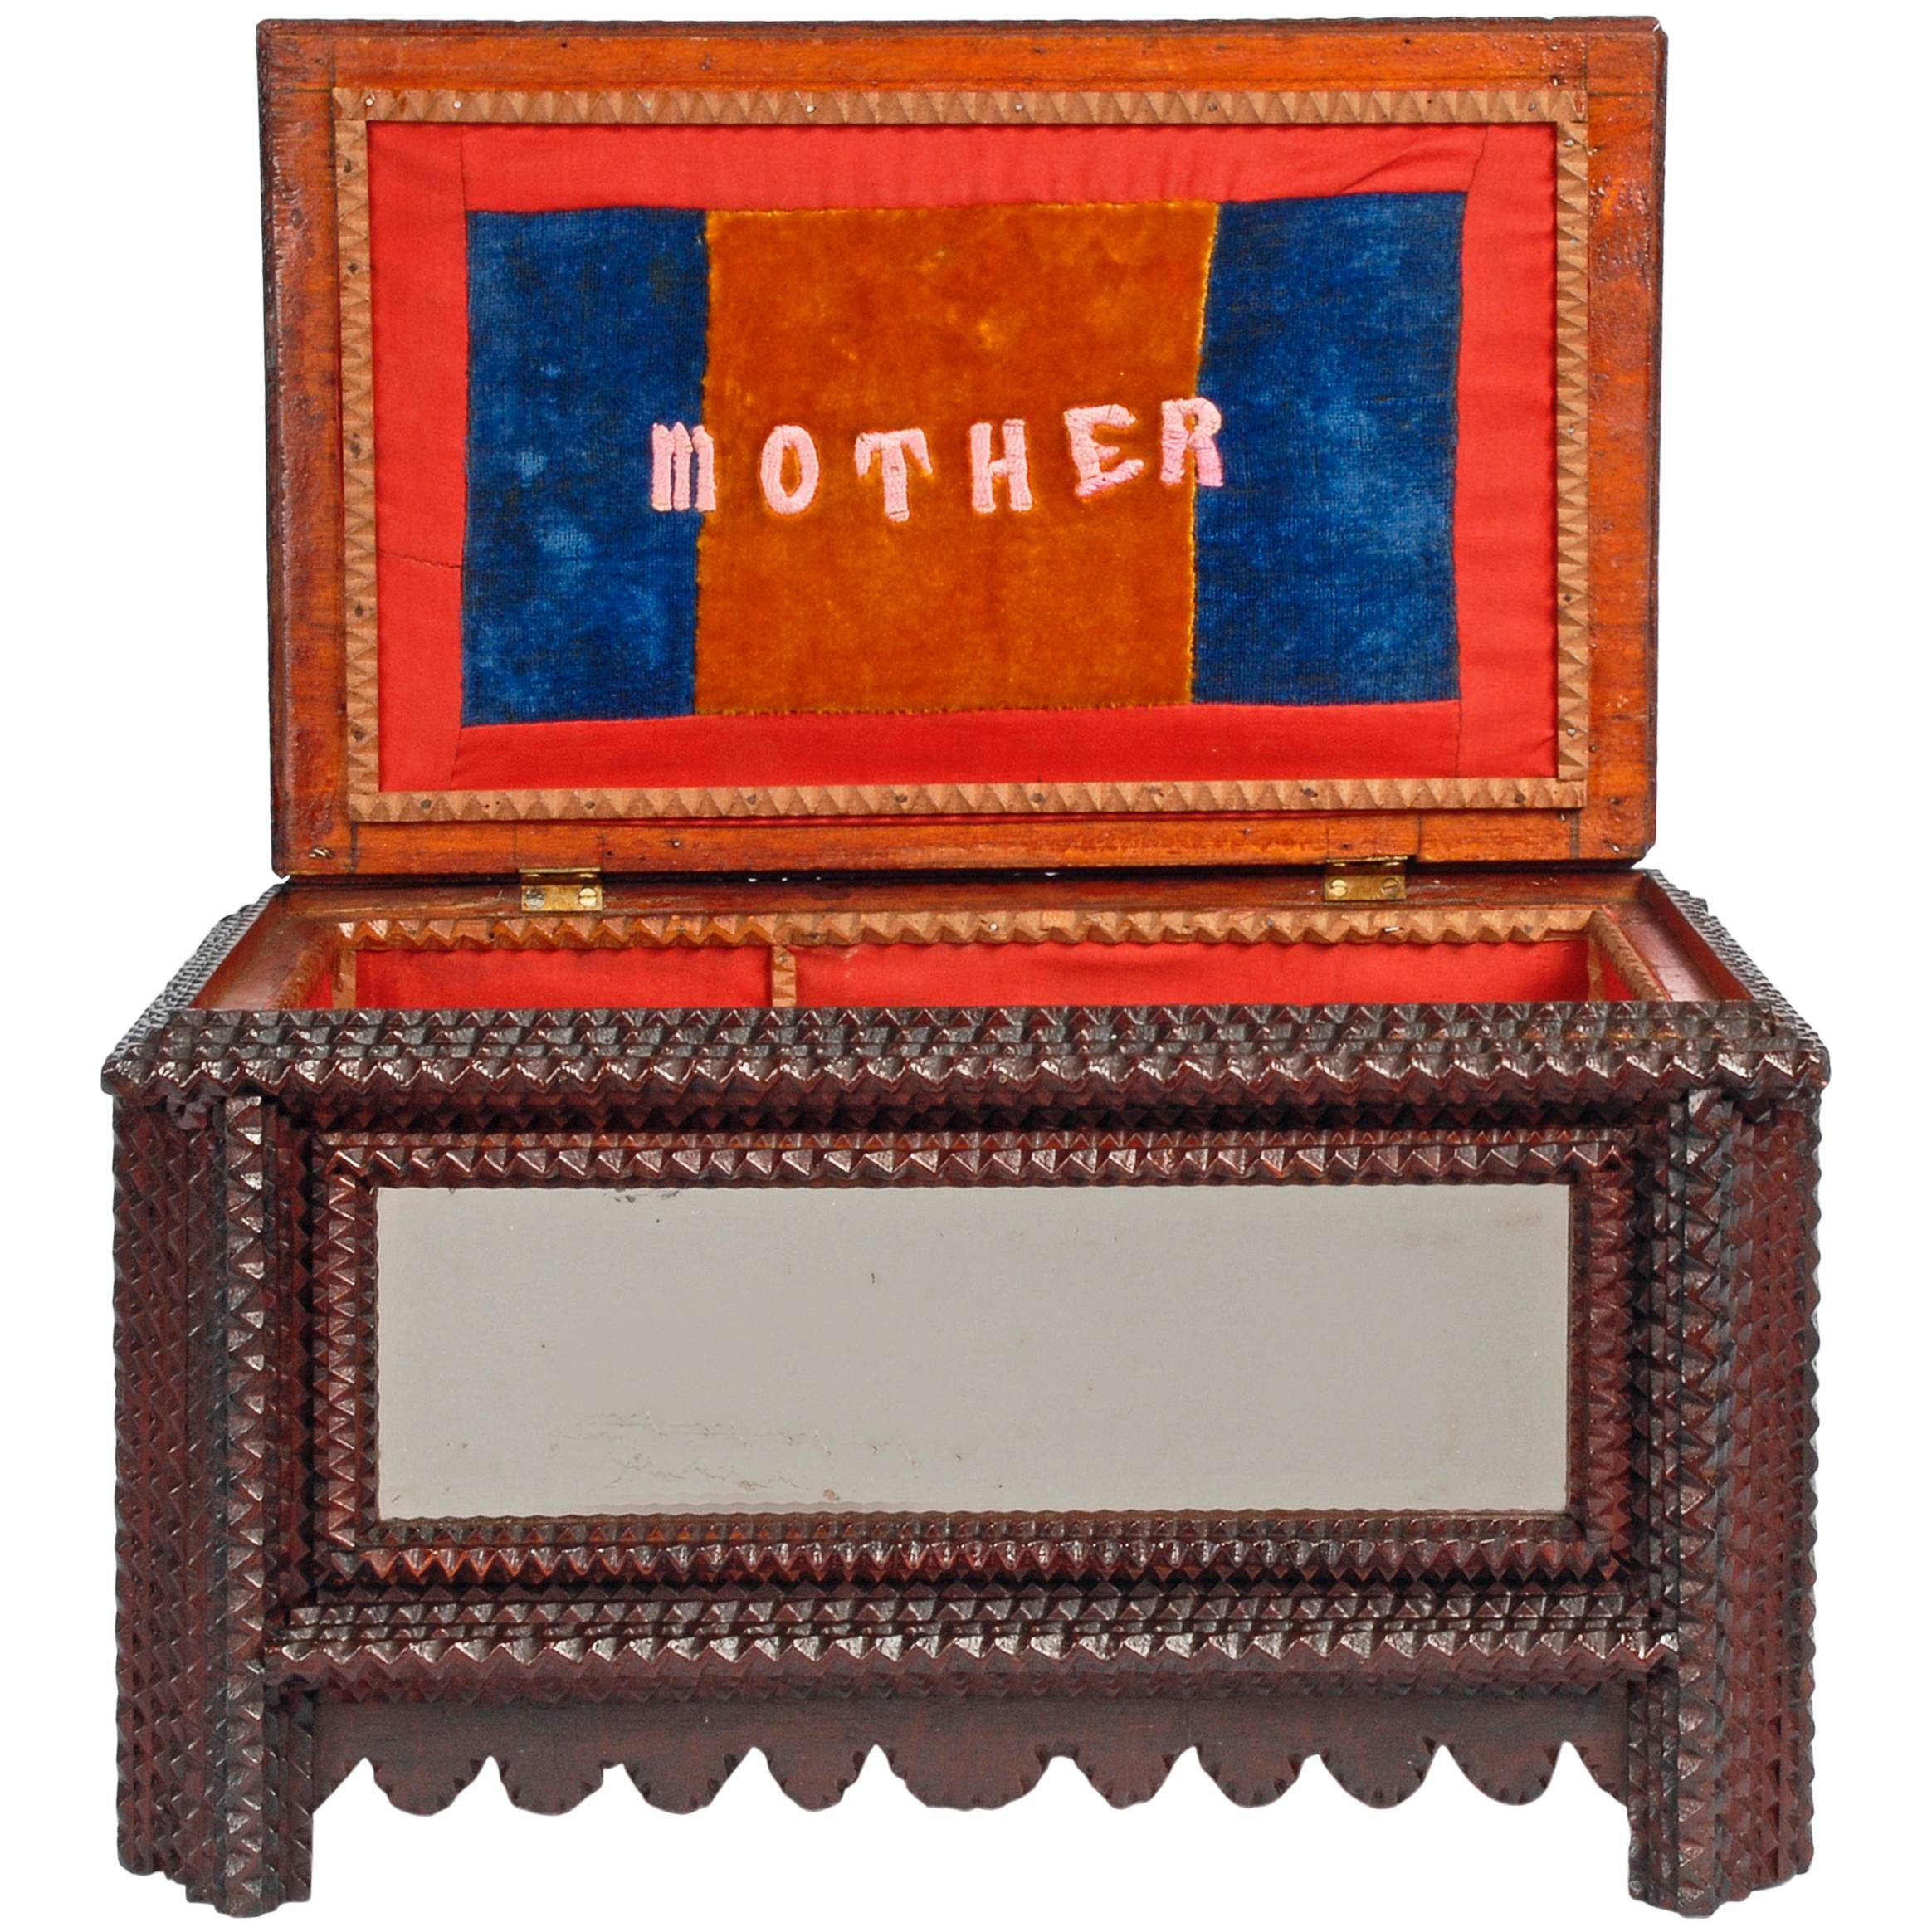 Inspired ‘Mother’ Tramp Art Box